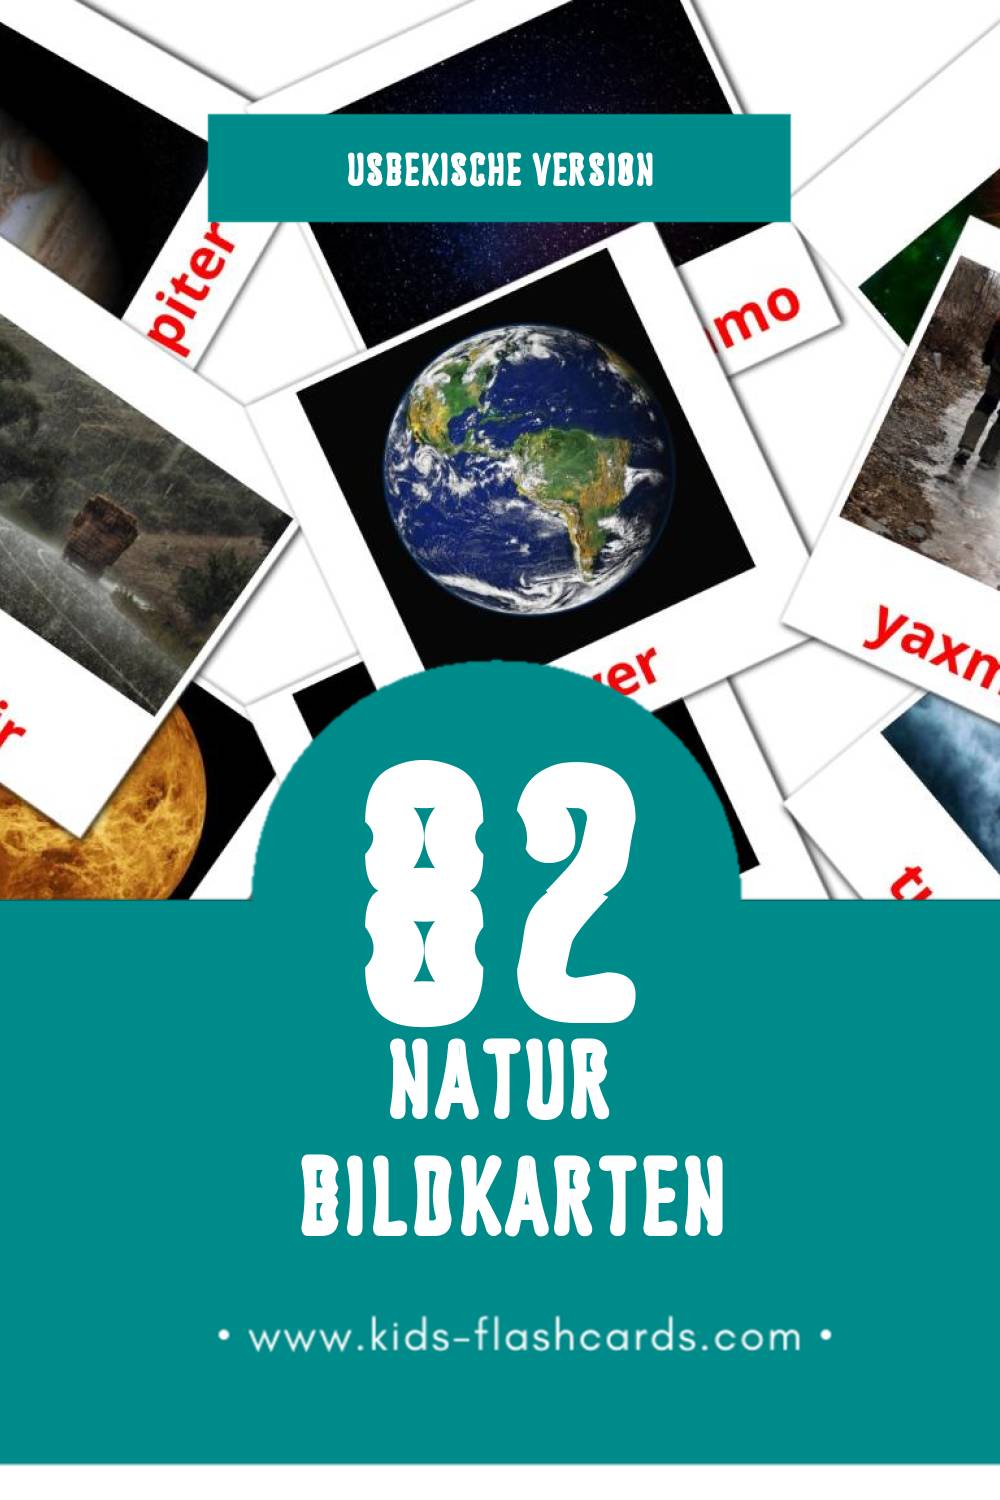 Visual Tabiyat Flashcards für Kleinkinder (82 Karten in Usbekisch)